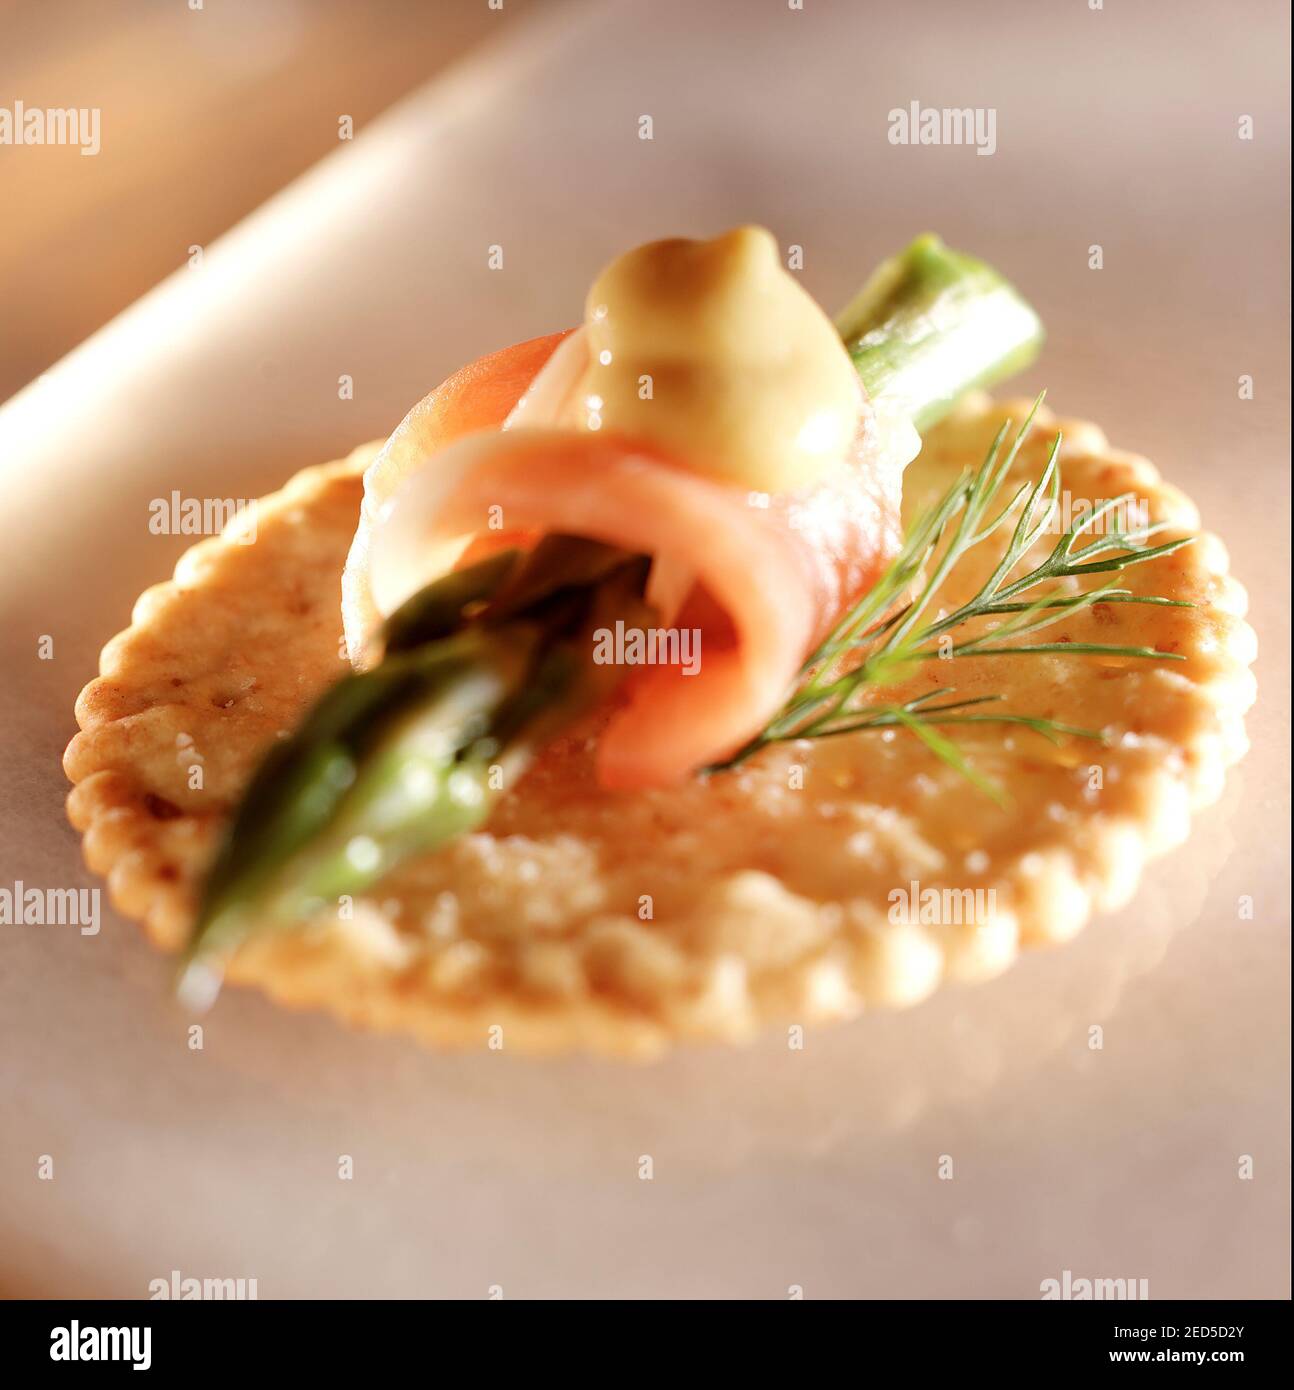 prosciutto & asparagus on a cracker Stock Photo